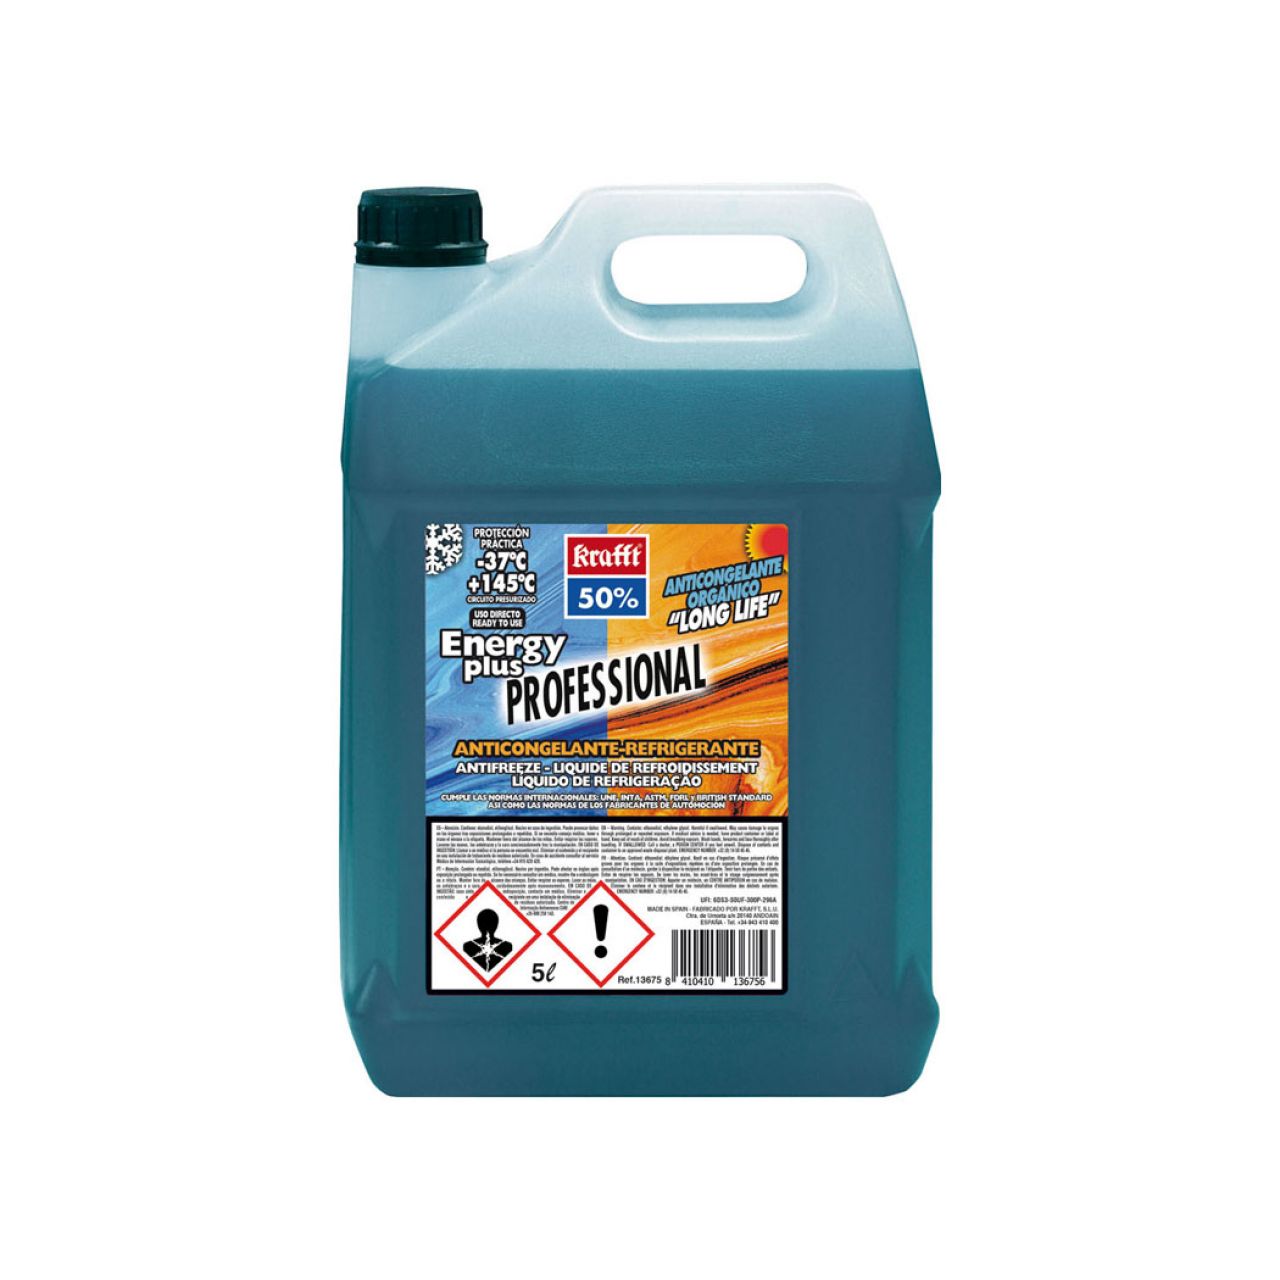 Anticongelante Refrigerante Energy Plus CC. 50% (G-12) Orgánico 5 L Azul transparente. Plástico